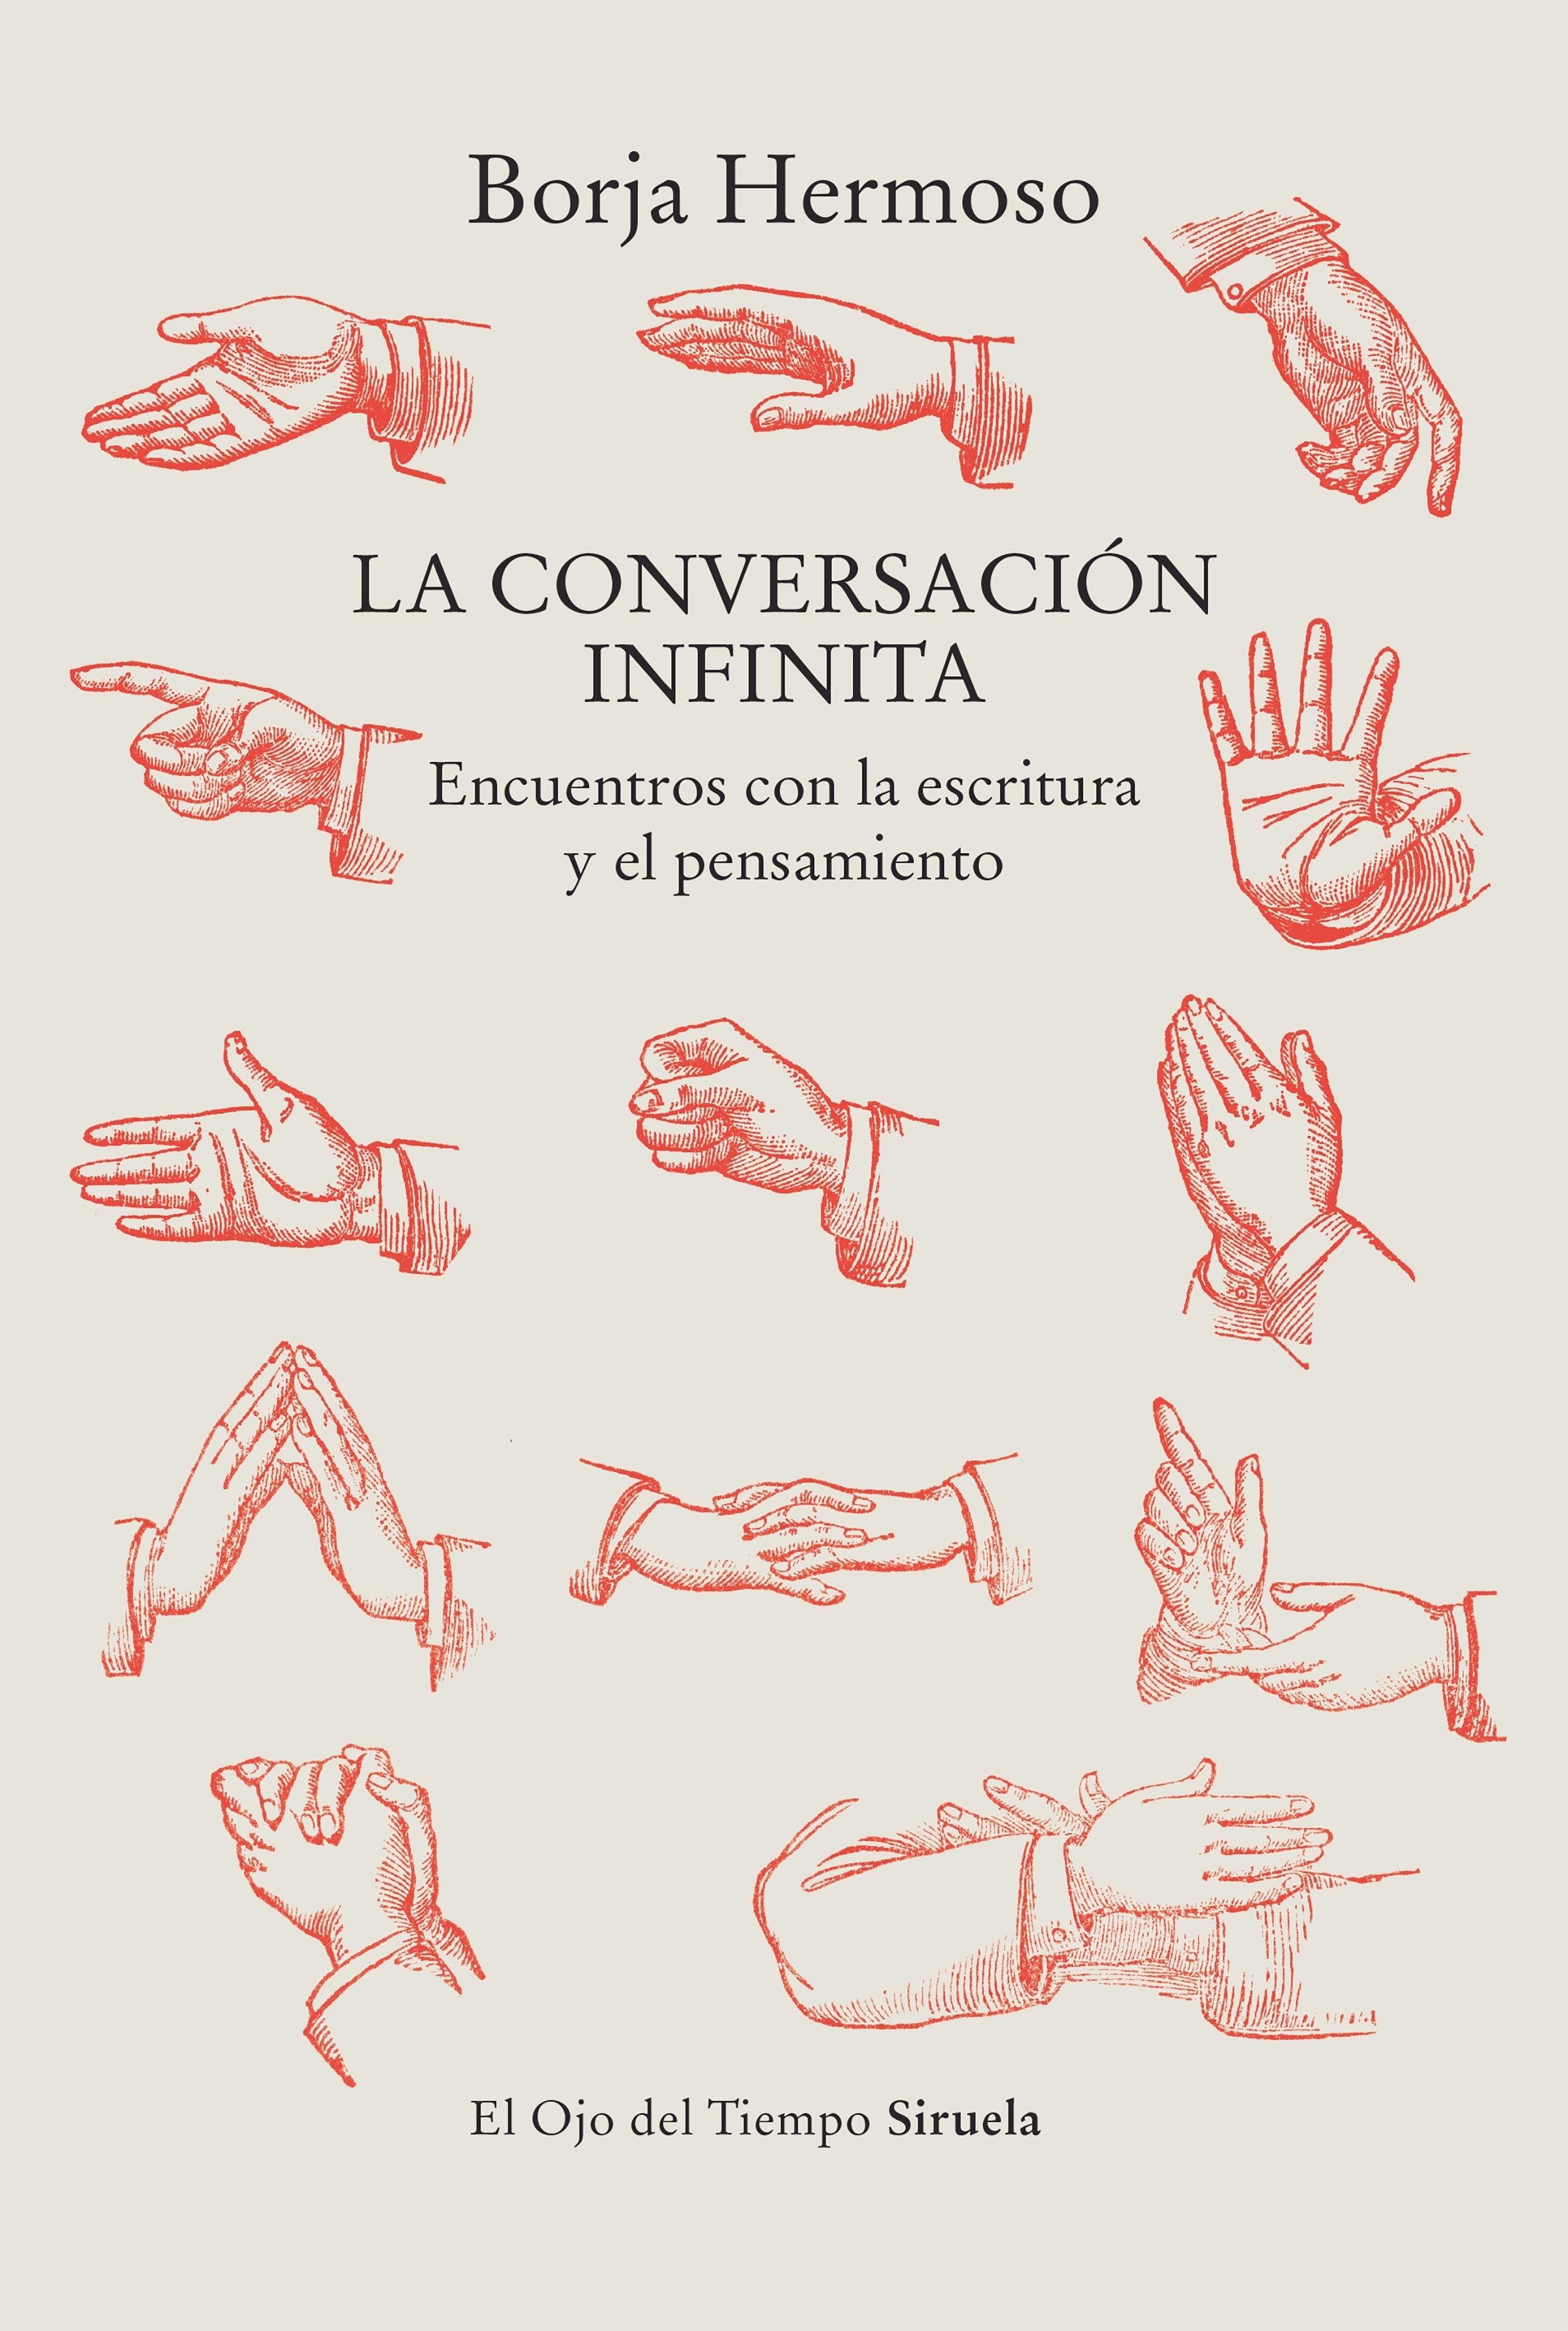 La Conversación Infinita "Encuentro con la Escritura y el Pensamiento ". 